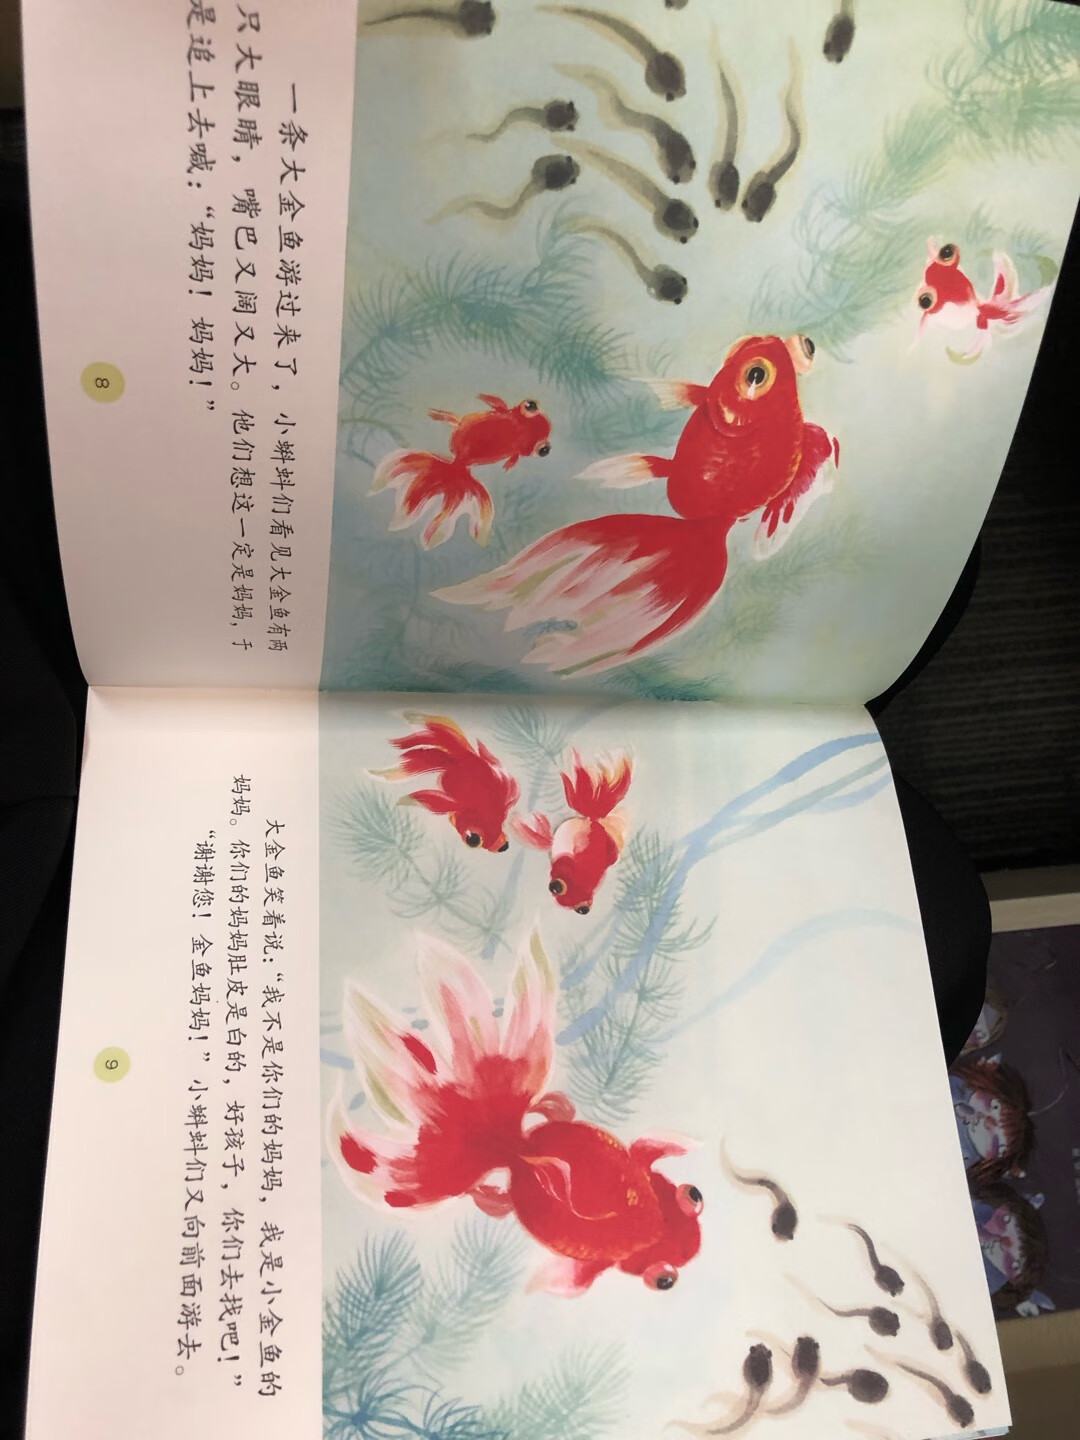 很美的中国风，女儿很喜欢，讲了N遍了，杨永青的绘本真的很美啊，故事也是自己小时候听过的故事，很赞！